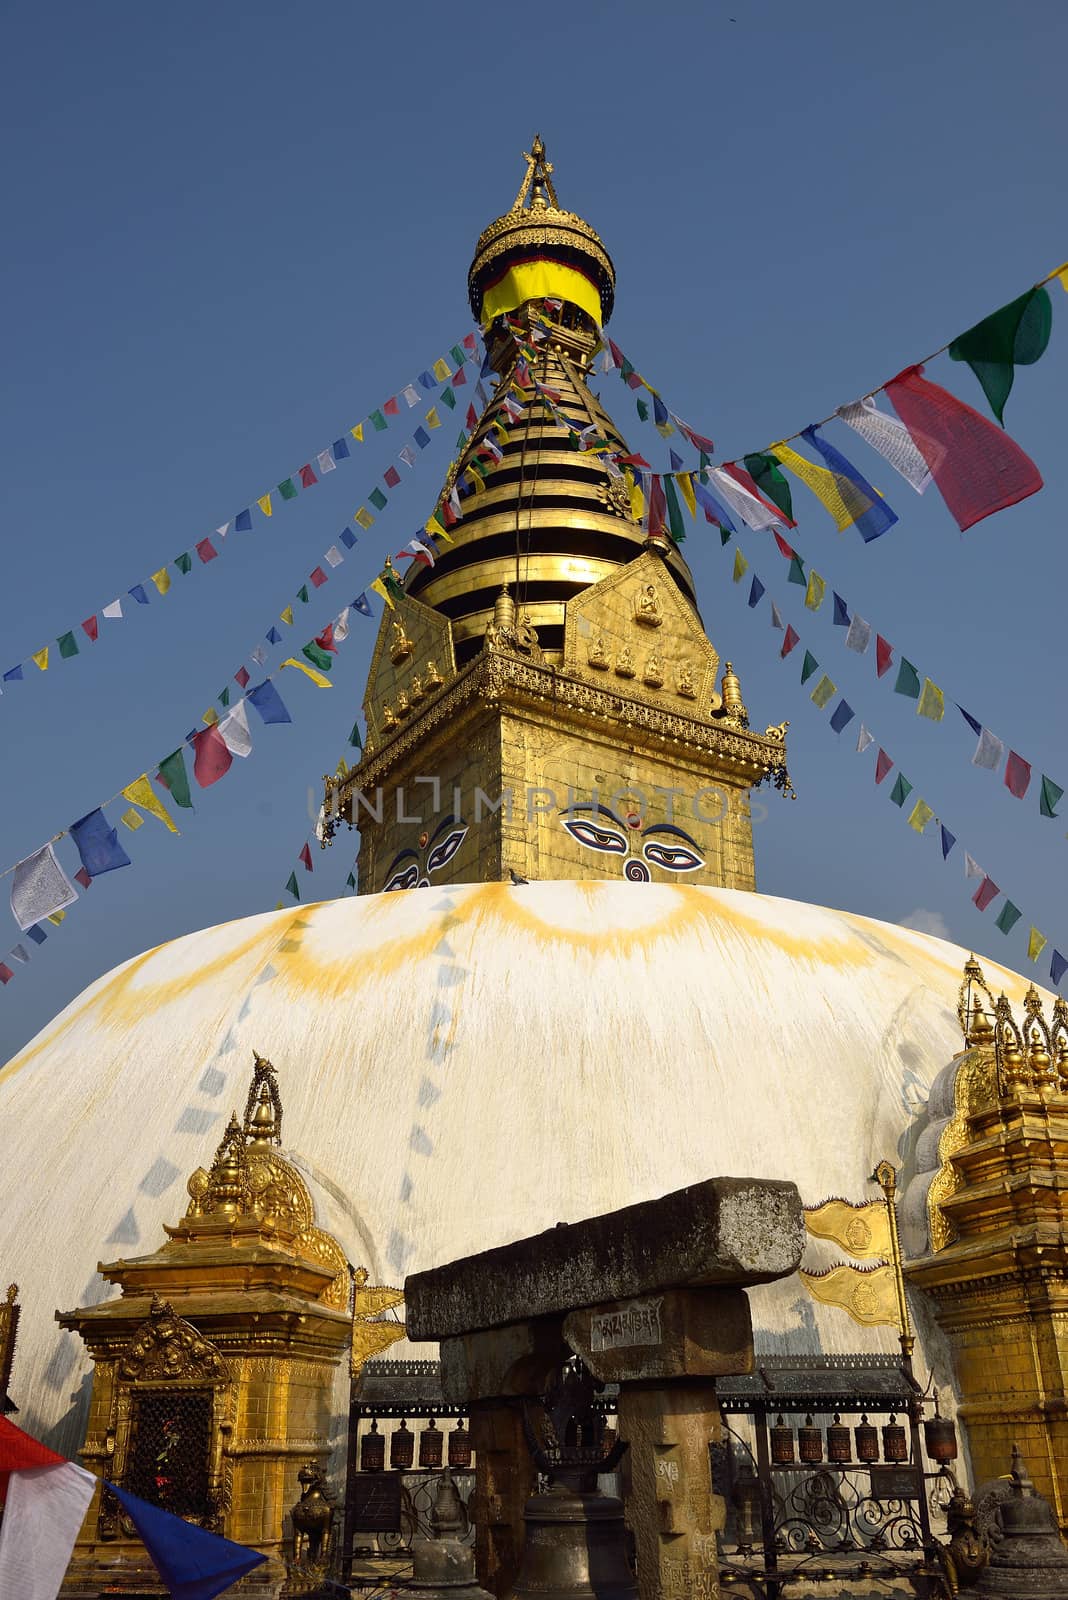 The wisdom eyes, Swayambhunath Monastery, Nepal